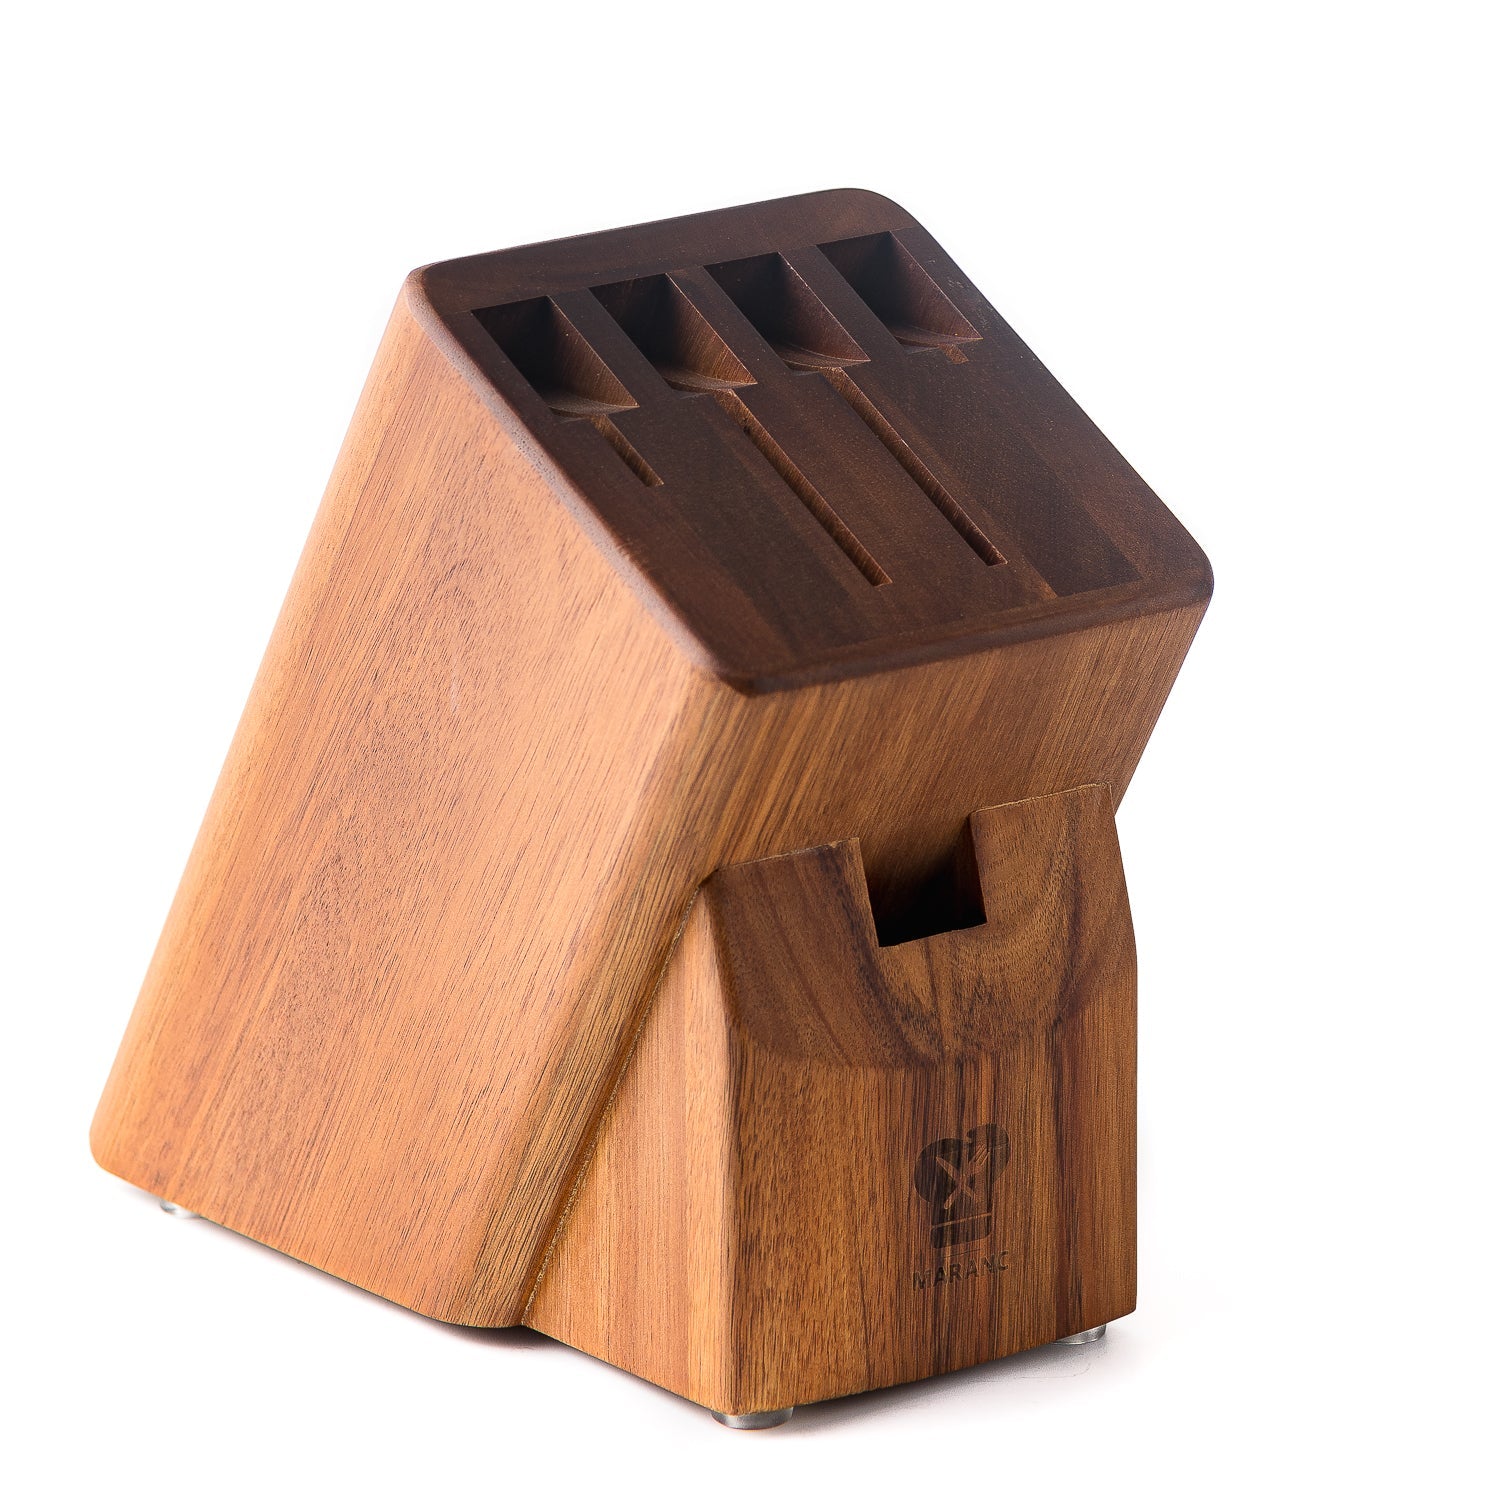 Suport cutite Maranc din lemn pentru 4 cutite M197 -